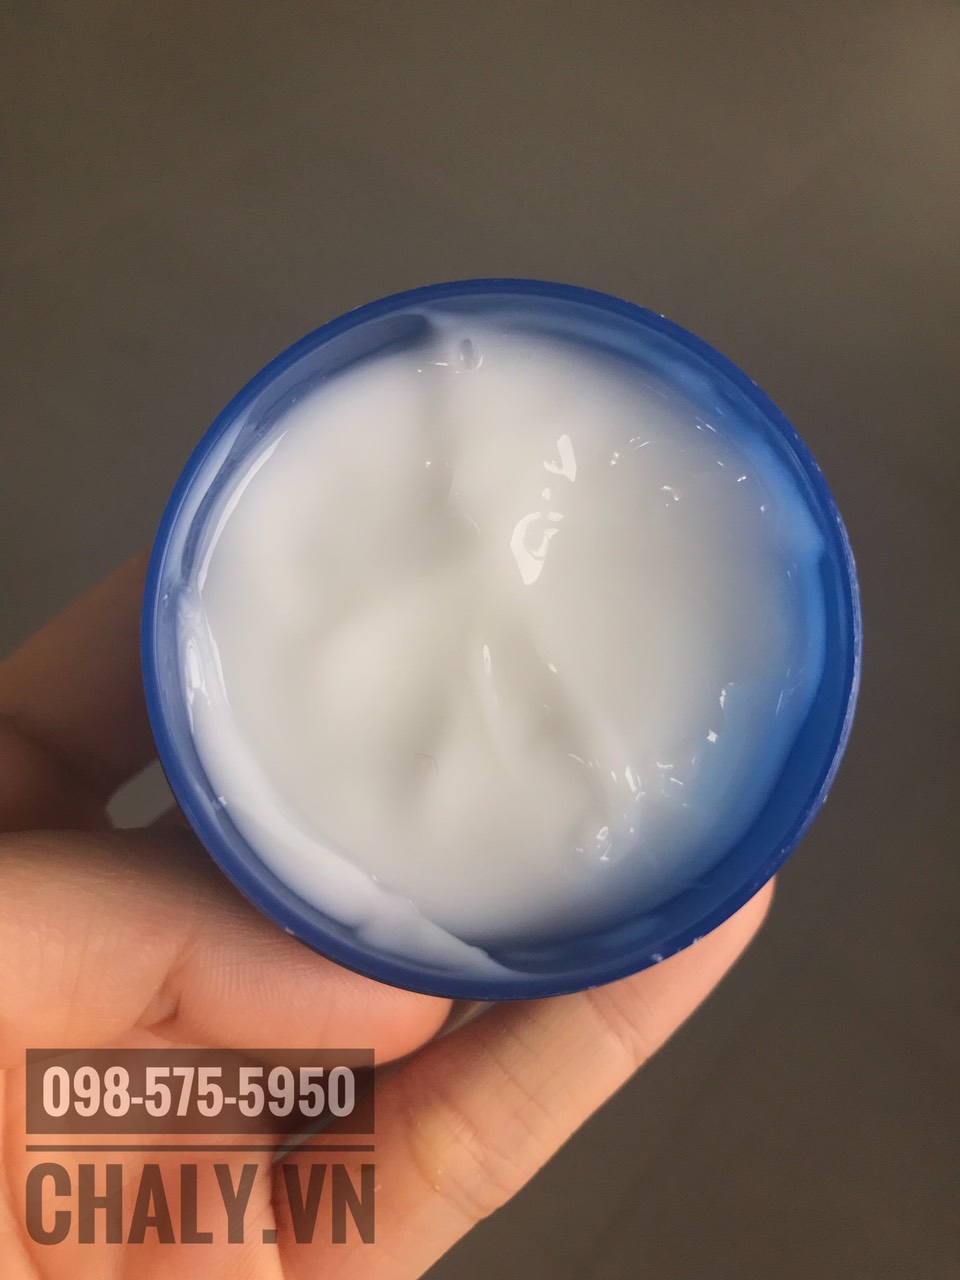 Kem dưỡng ẩm Hada Labo màu xanh có texture dạng kem lai gel, lỏng nhẹ, tan như nước khi tiếp xúc với da. Không gây mụn. Phù hợp da dầu và da hỗn hợp